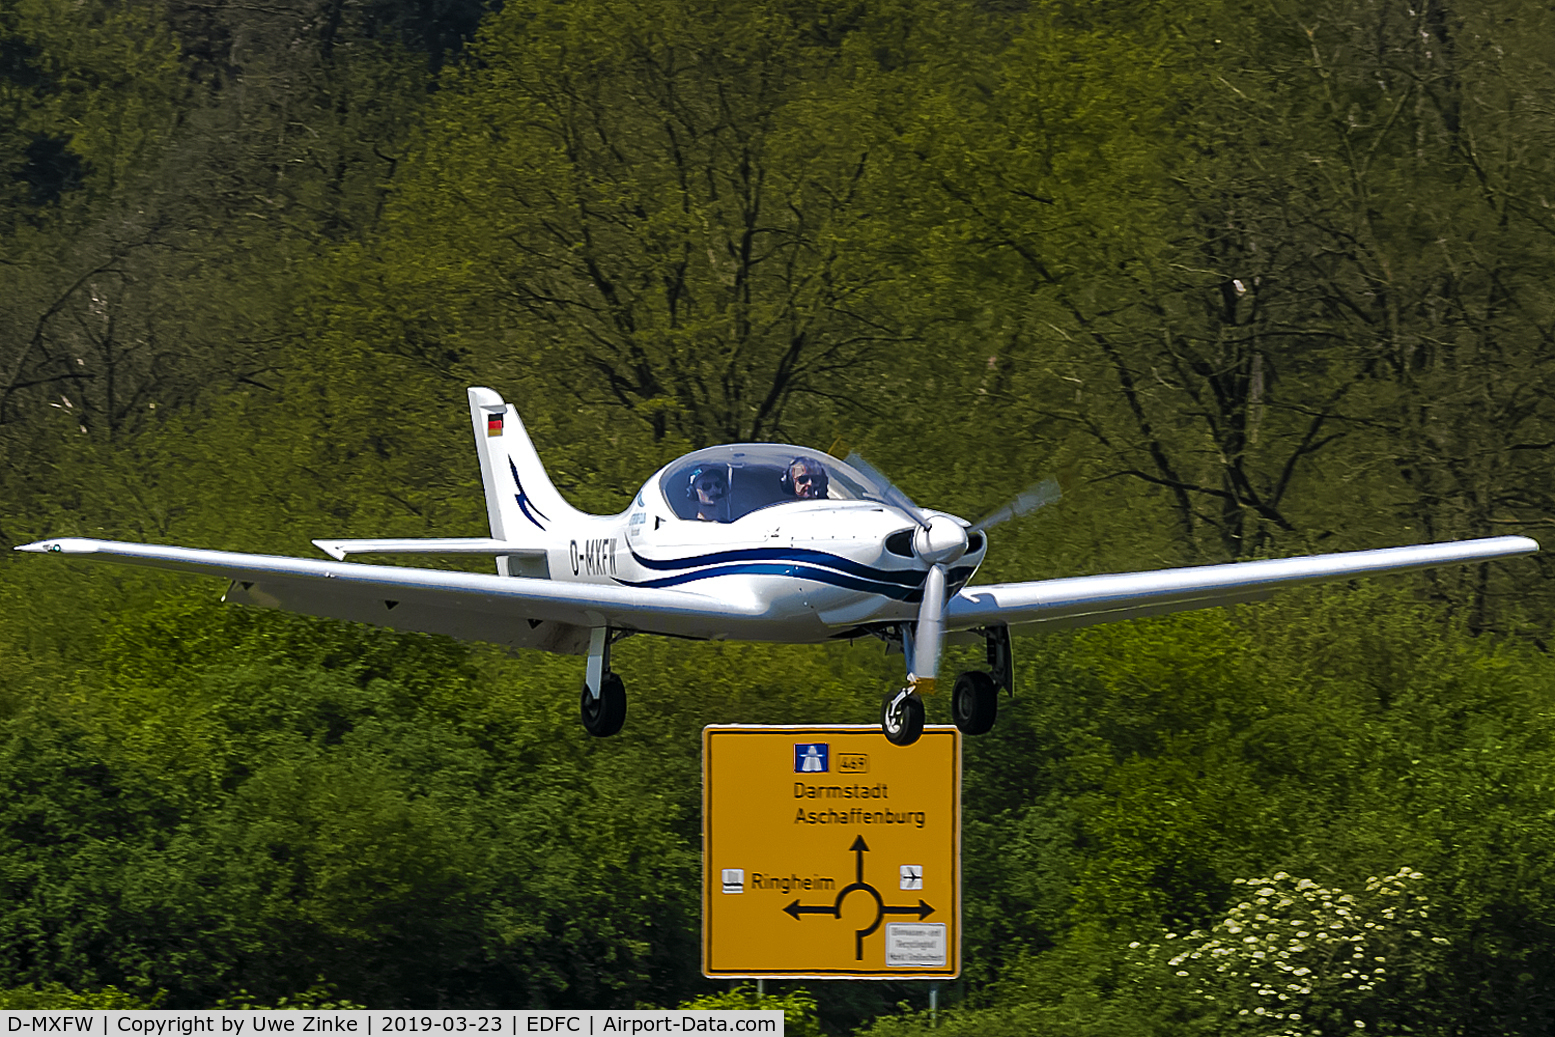 D-MXFW, 2002 Aerospool WT-9 Dynamic C/N DY013/2002, learning by doing